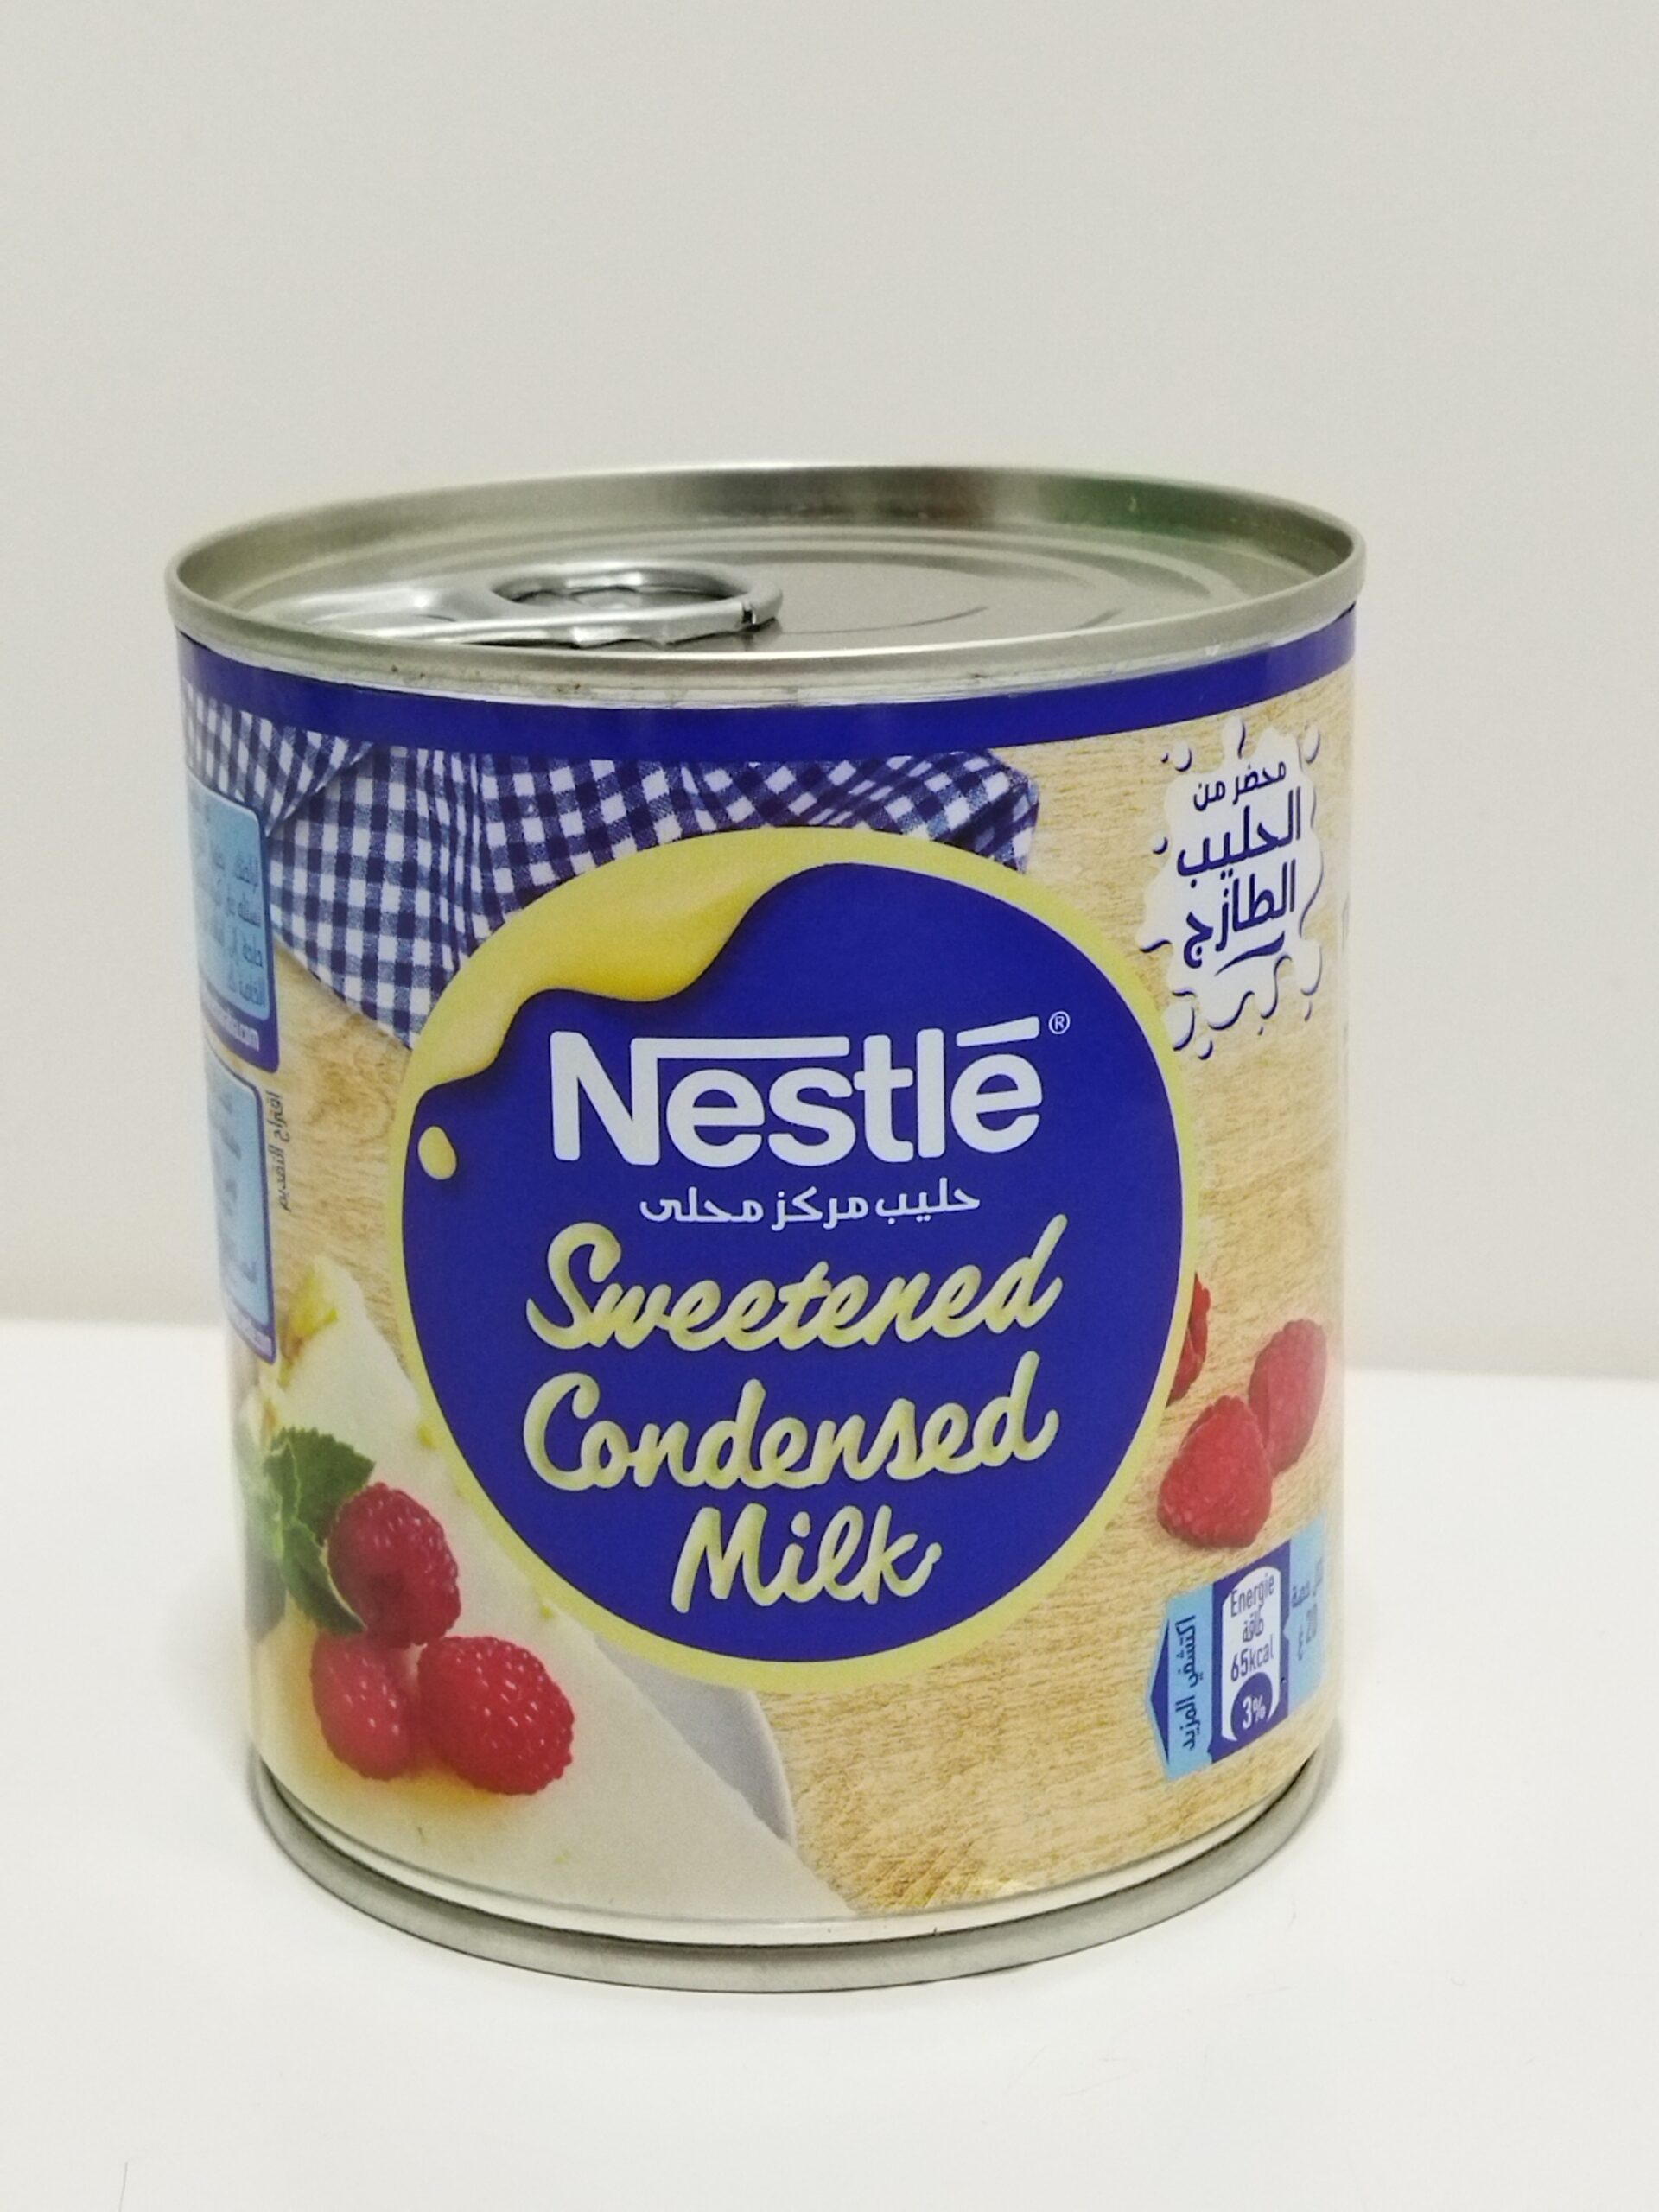 Lait concentré sucré Nestlé 1kg en boîte